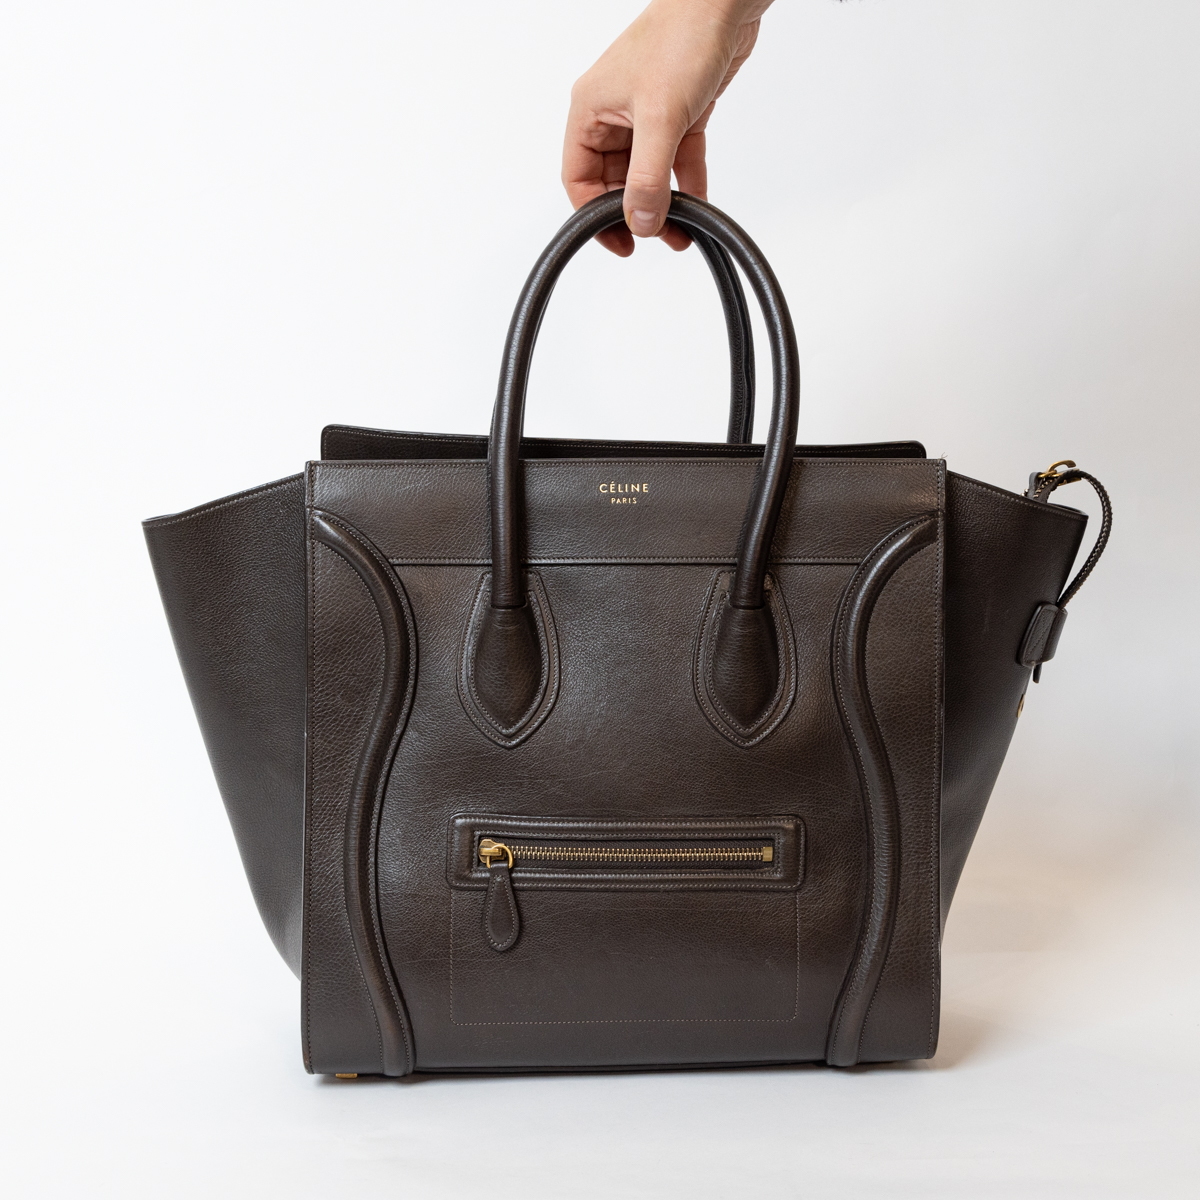 Celine Luggage Bag Dark Brown